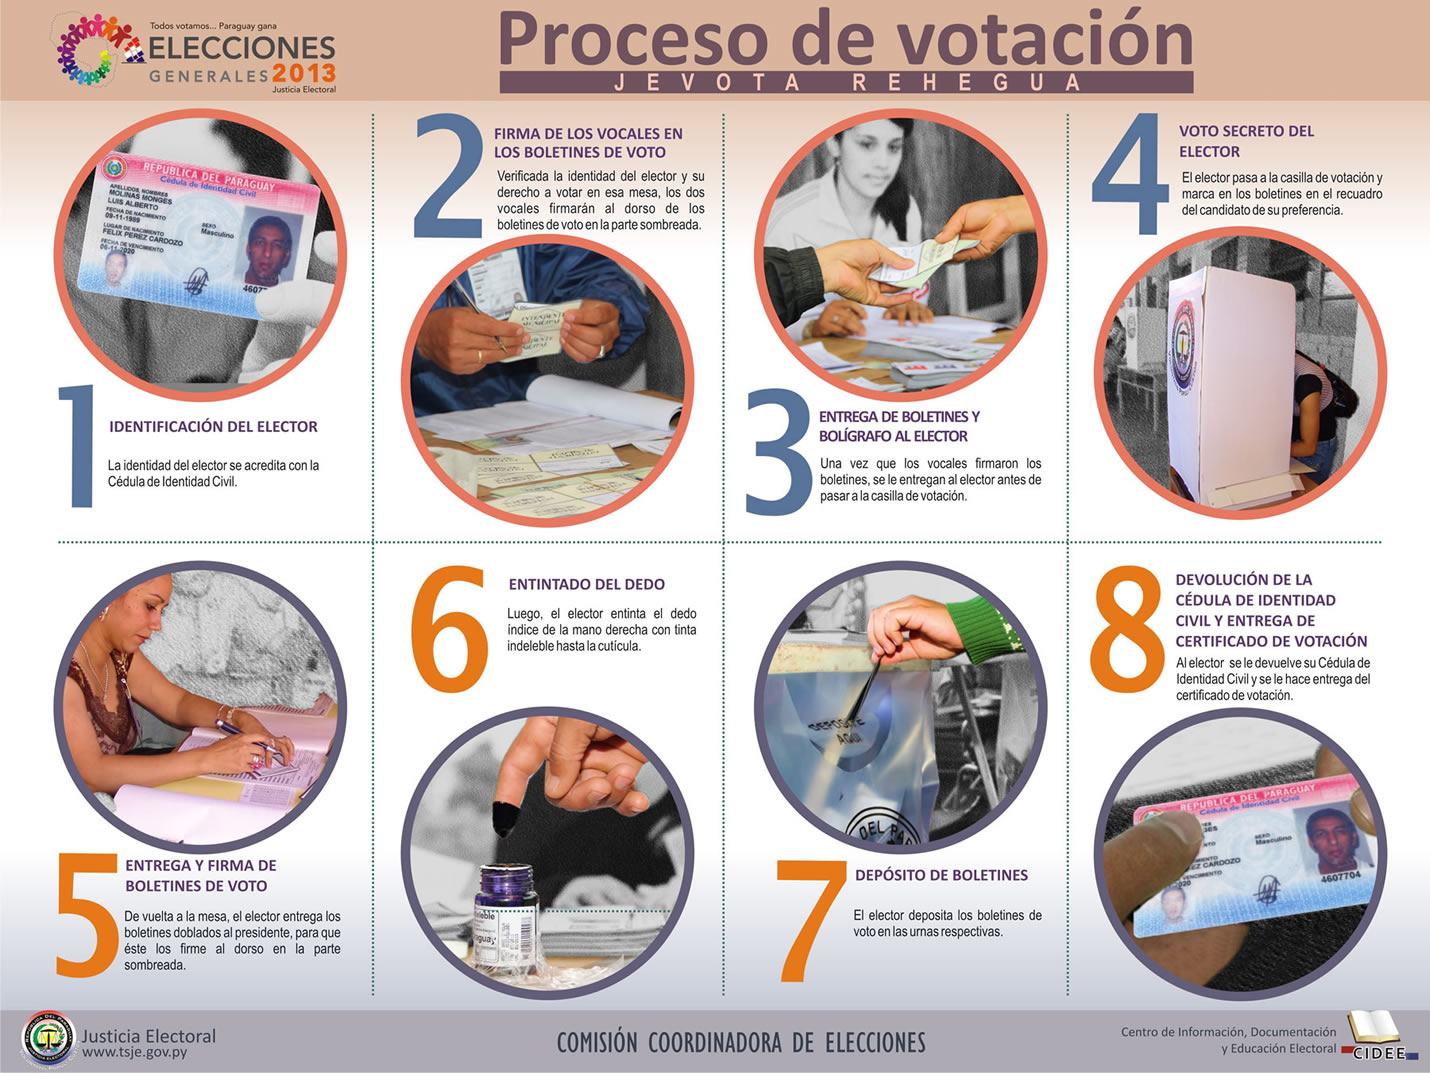 Proceso de votación en Castellano